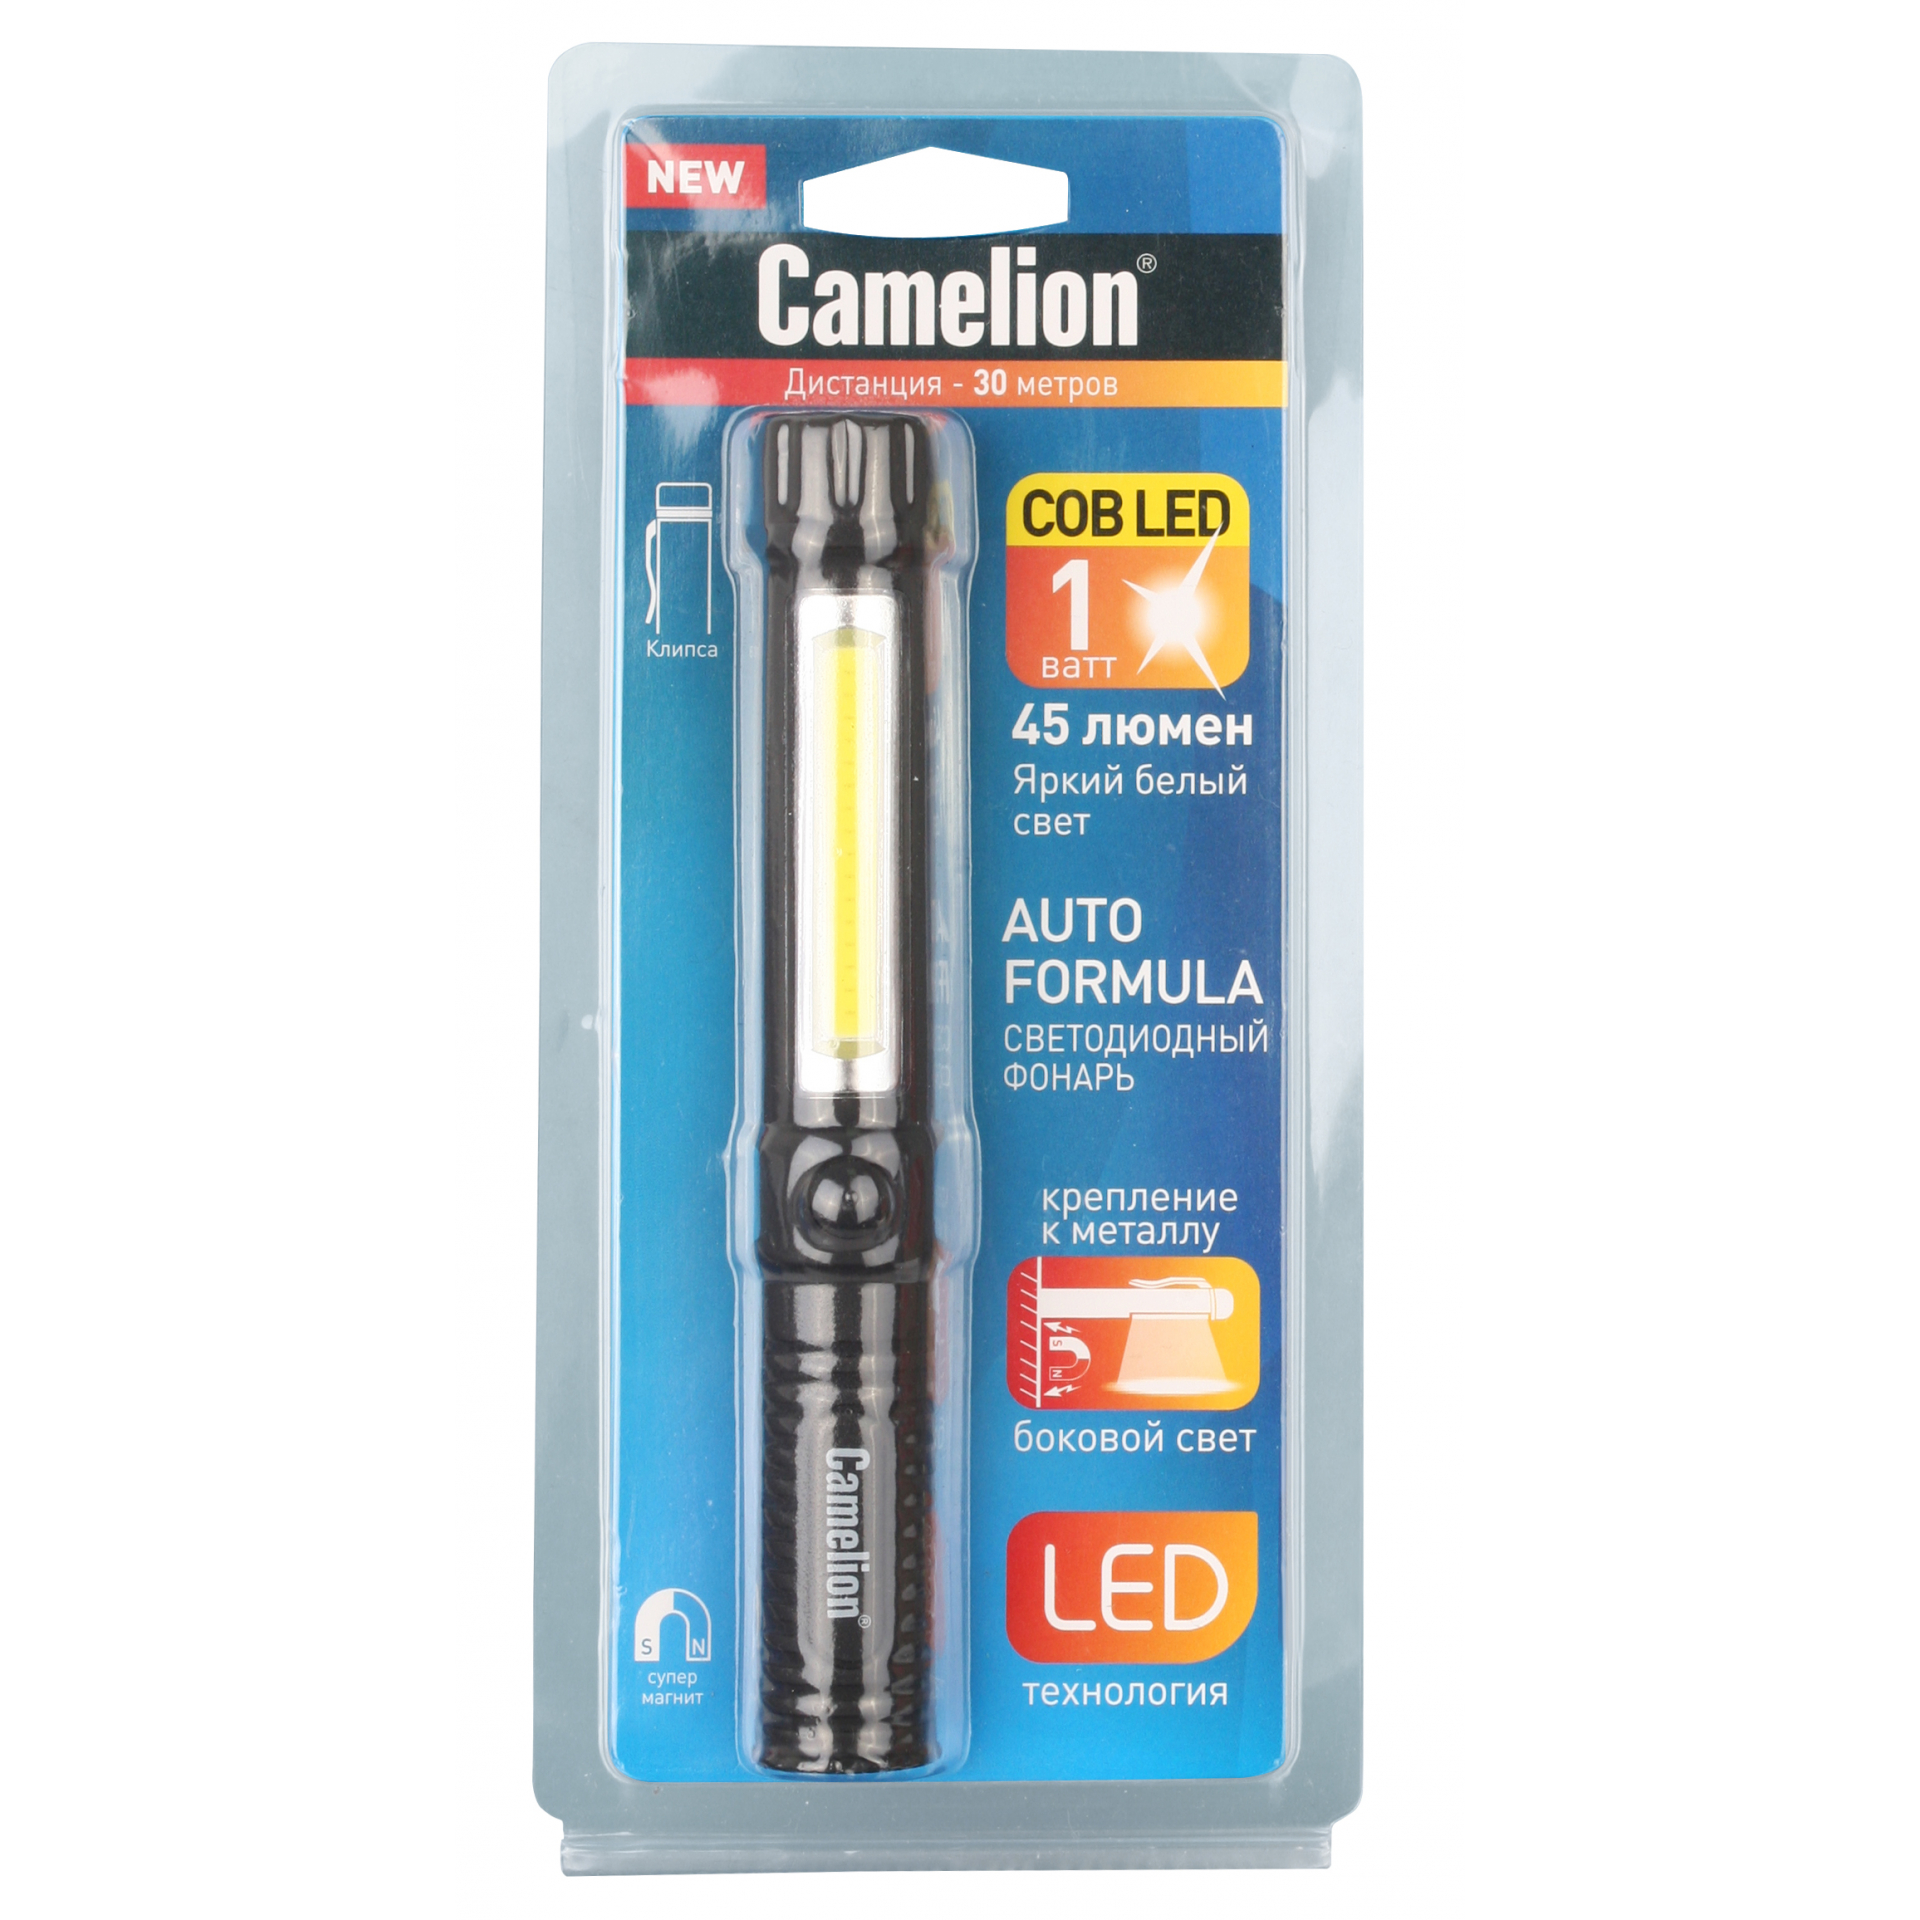 Сamelion LED51521 (фонарь-ручка, COB LED+1W LED, 3XR03, пластик, магнит, клипса, блистер)